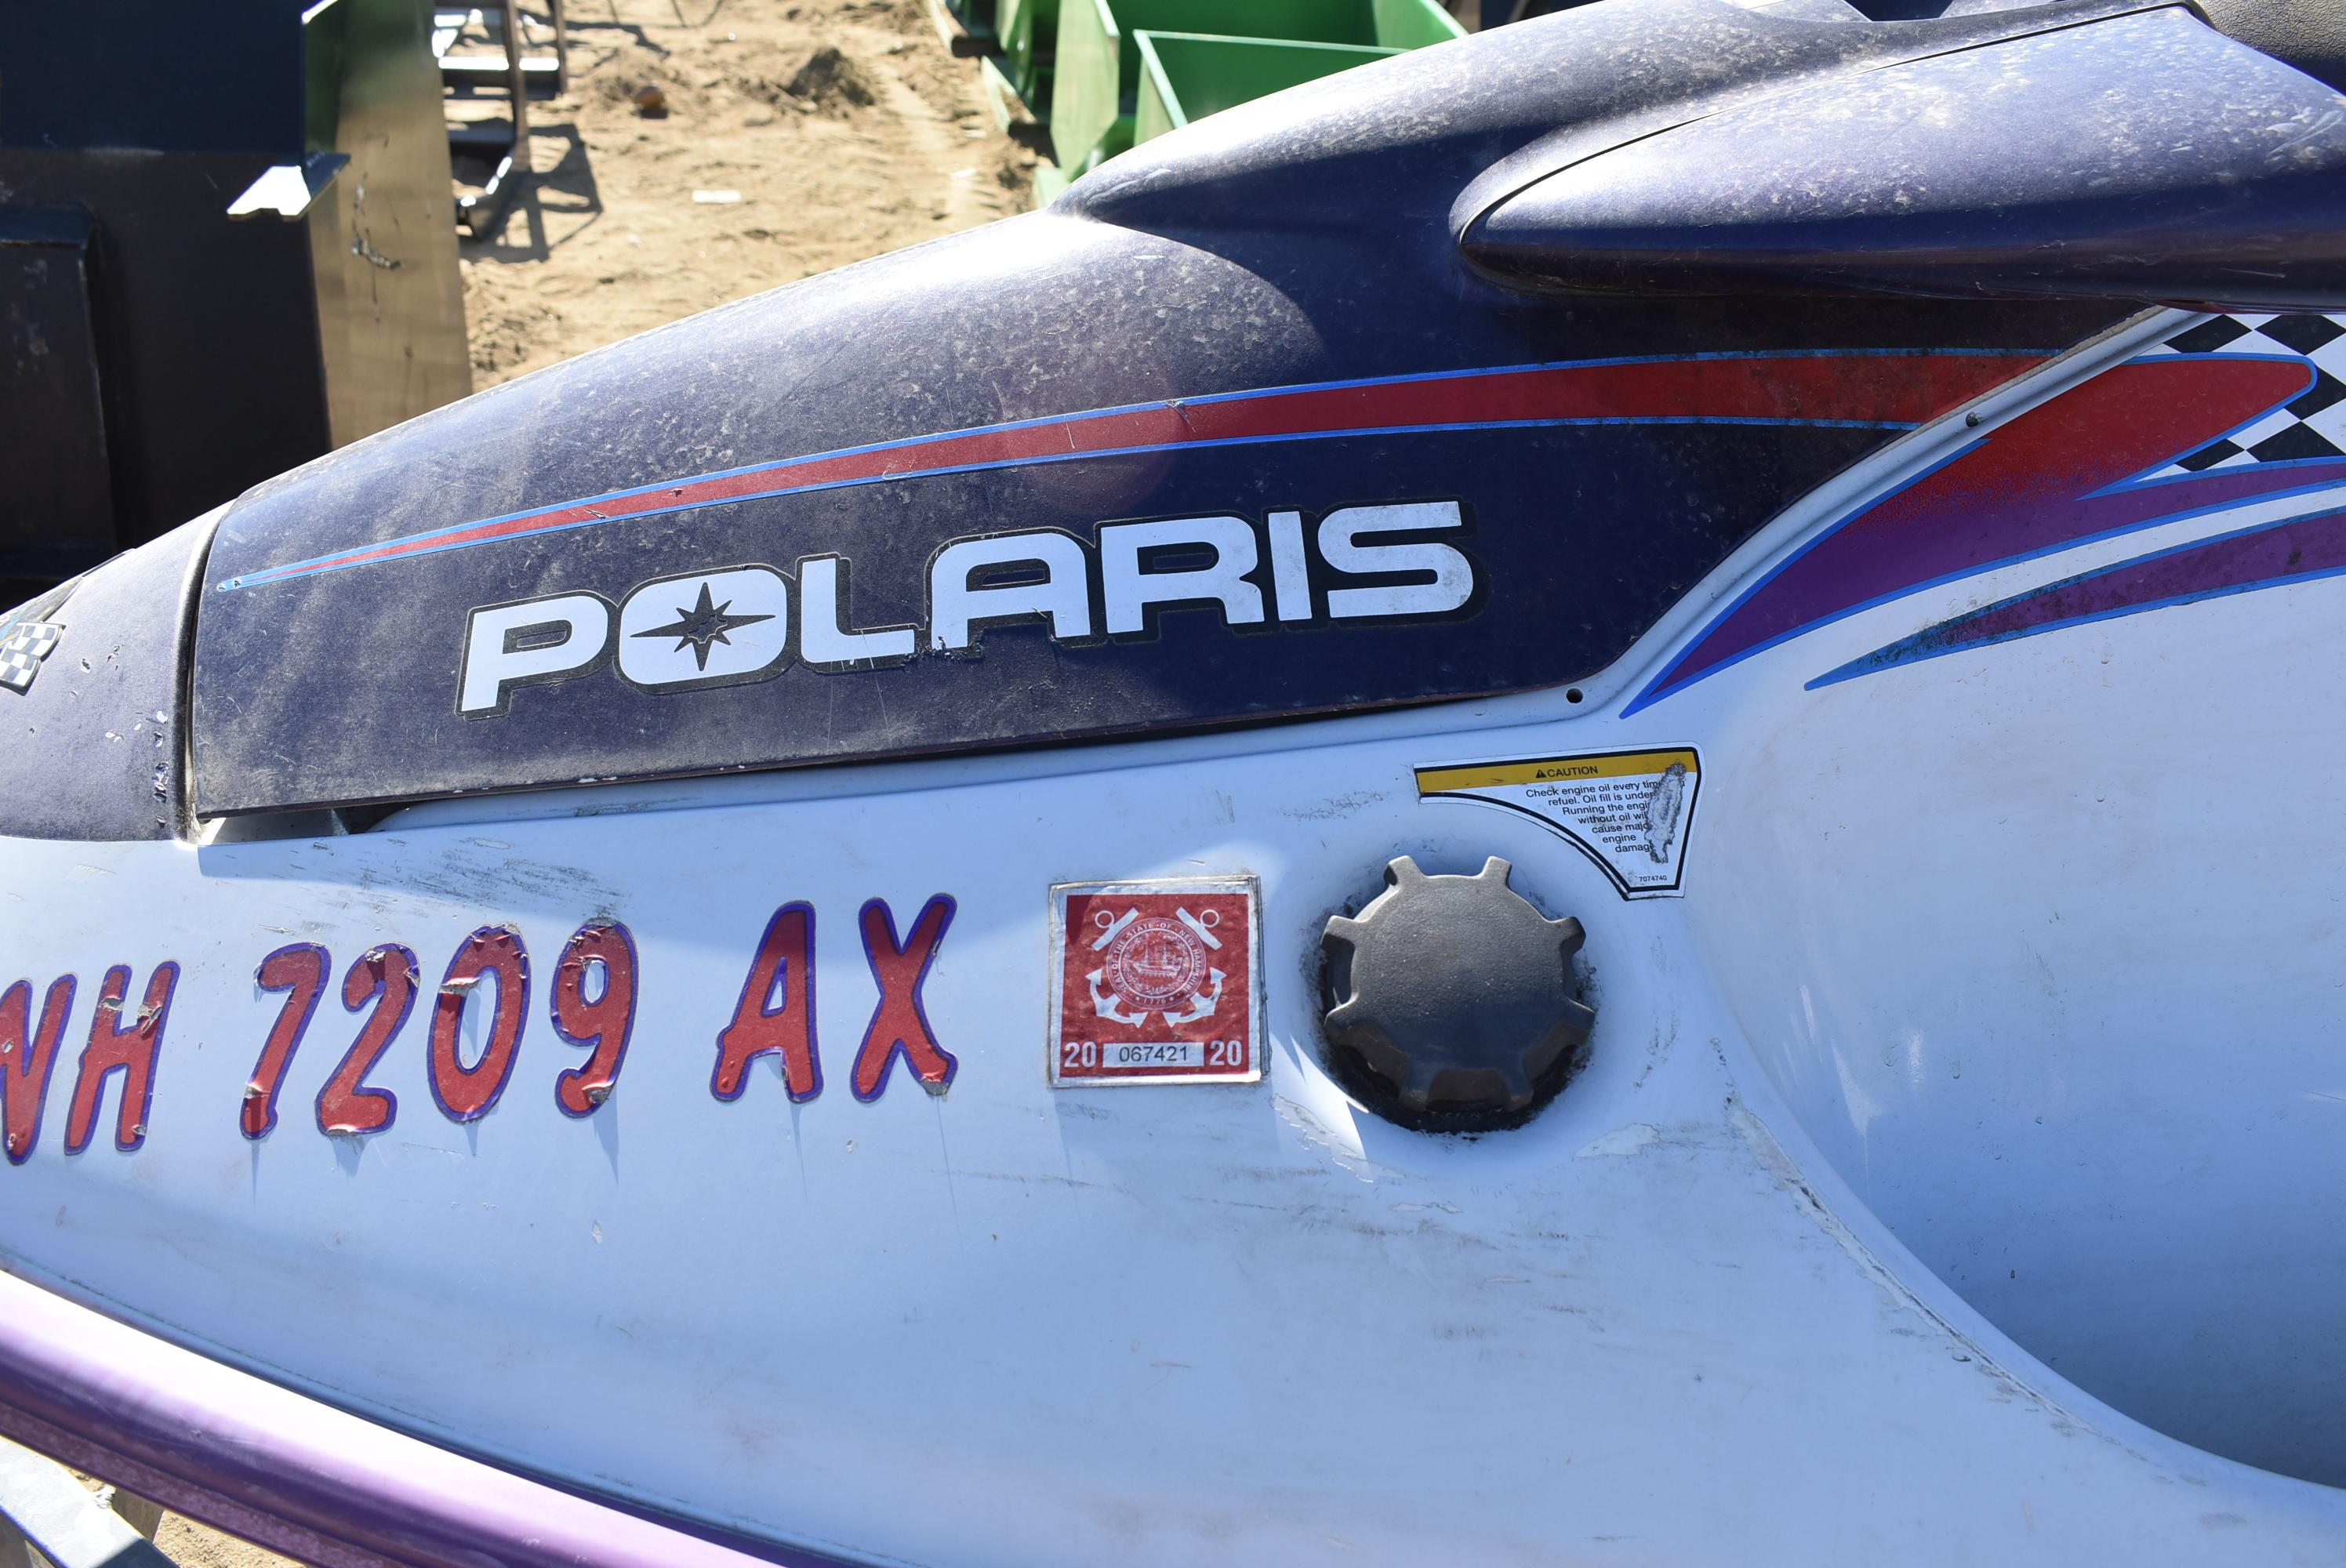 Polaris SLTX wave runner with trailer